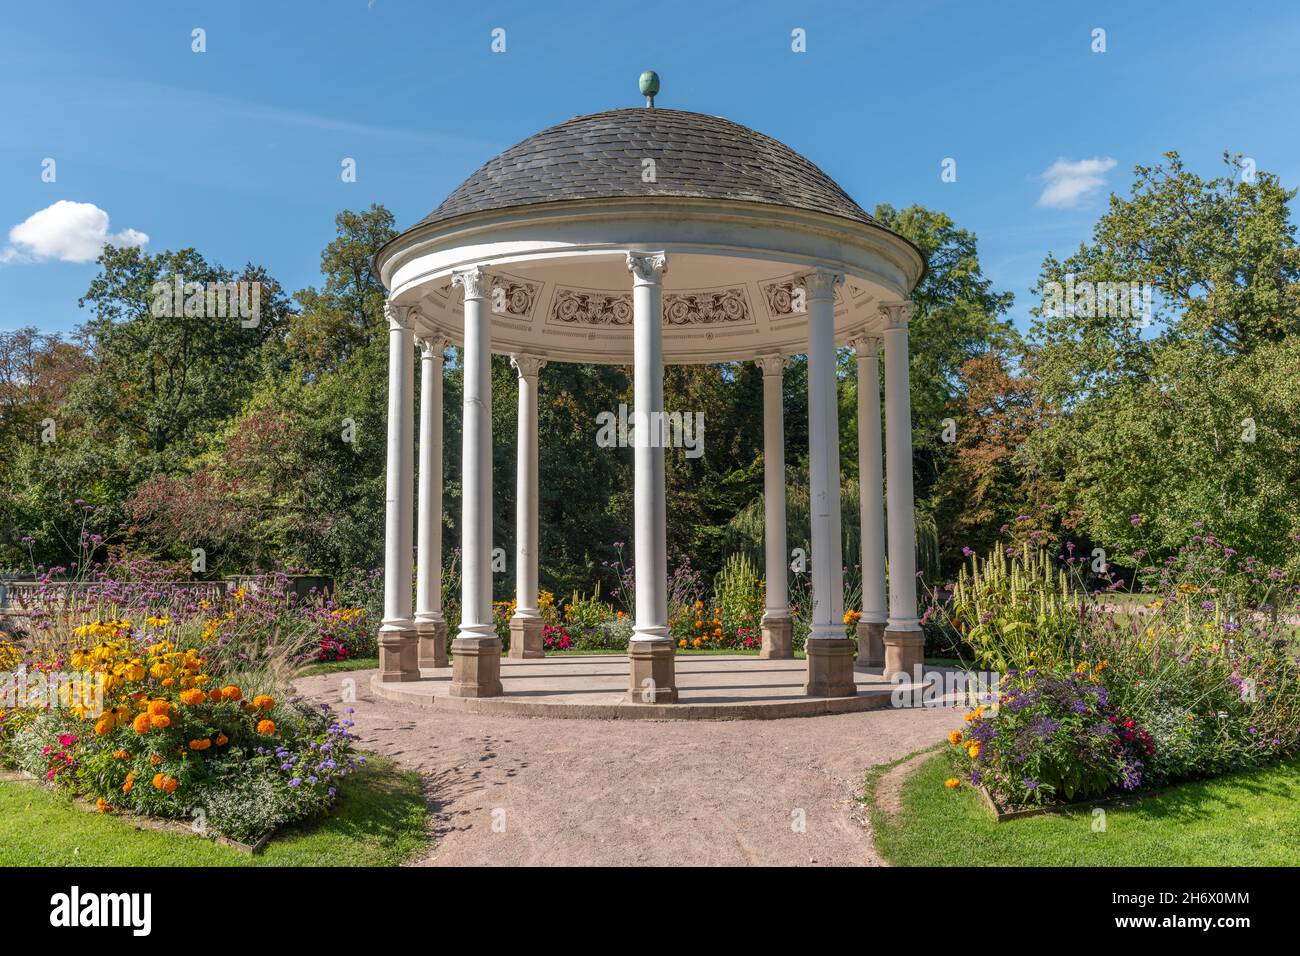 Kreisförmiger Tempel, bekannt als Tempel der Liebe (Anfang des 19th. Jahrhunderts) im neoklassischen Stil. Parc de l'Orangerie in Straßburg. Frankreich, Europa. Stockfoto